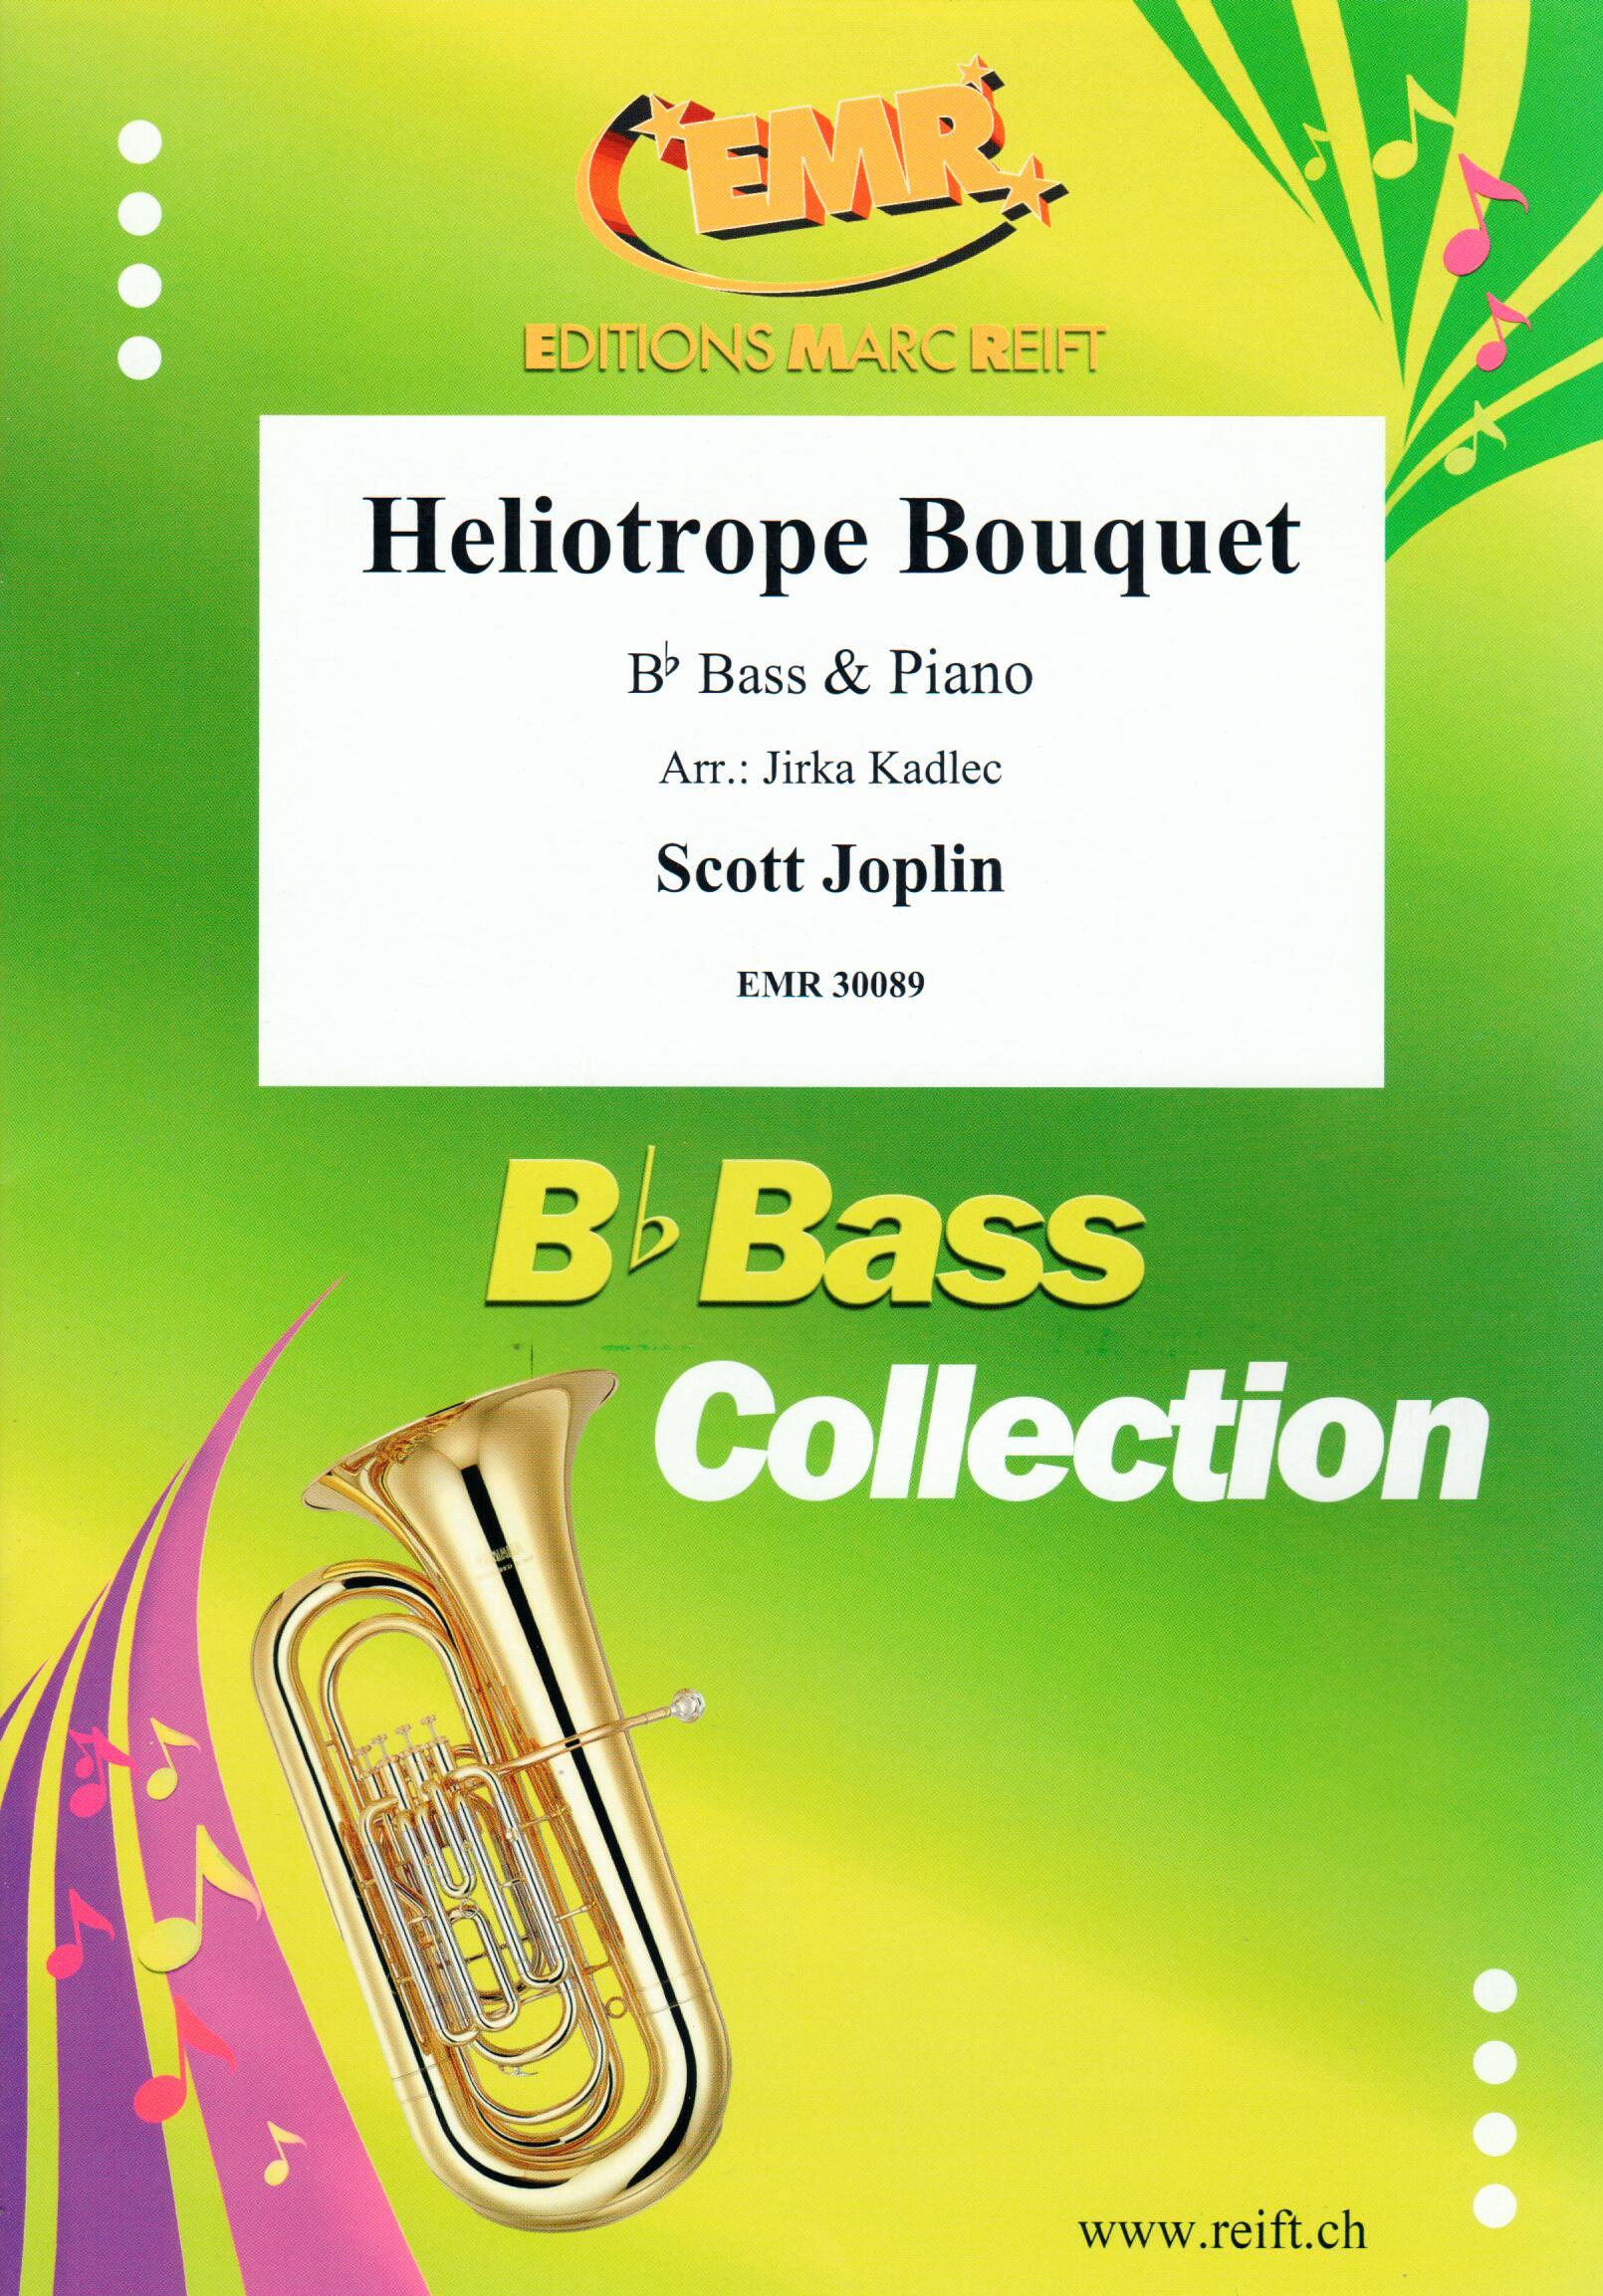 HELIOTROPE BOUQUET, SOLOS - E♭. Bass